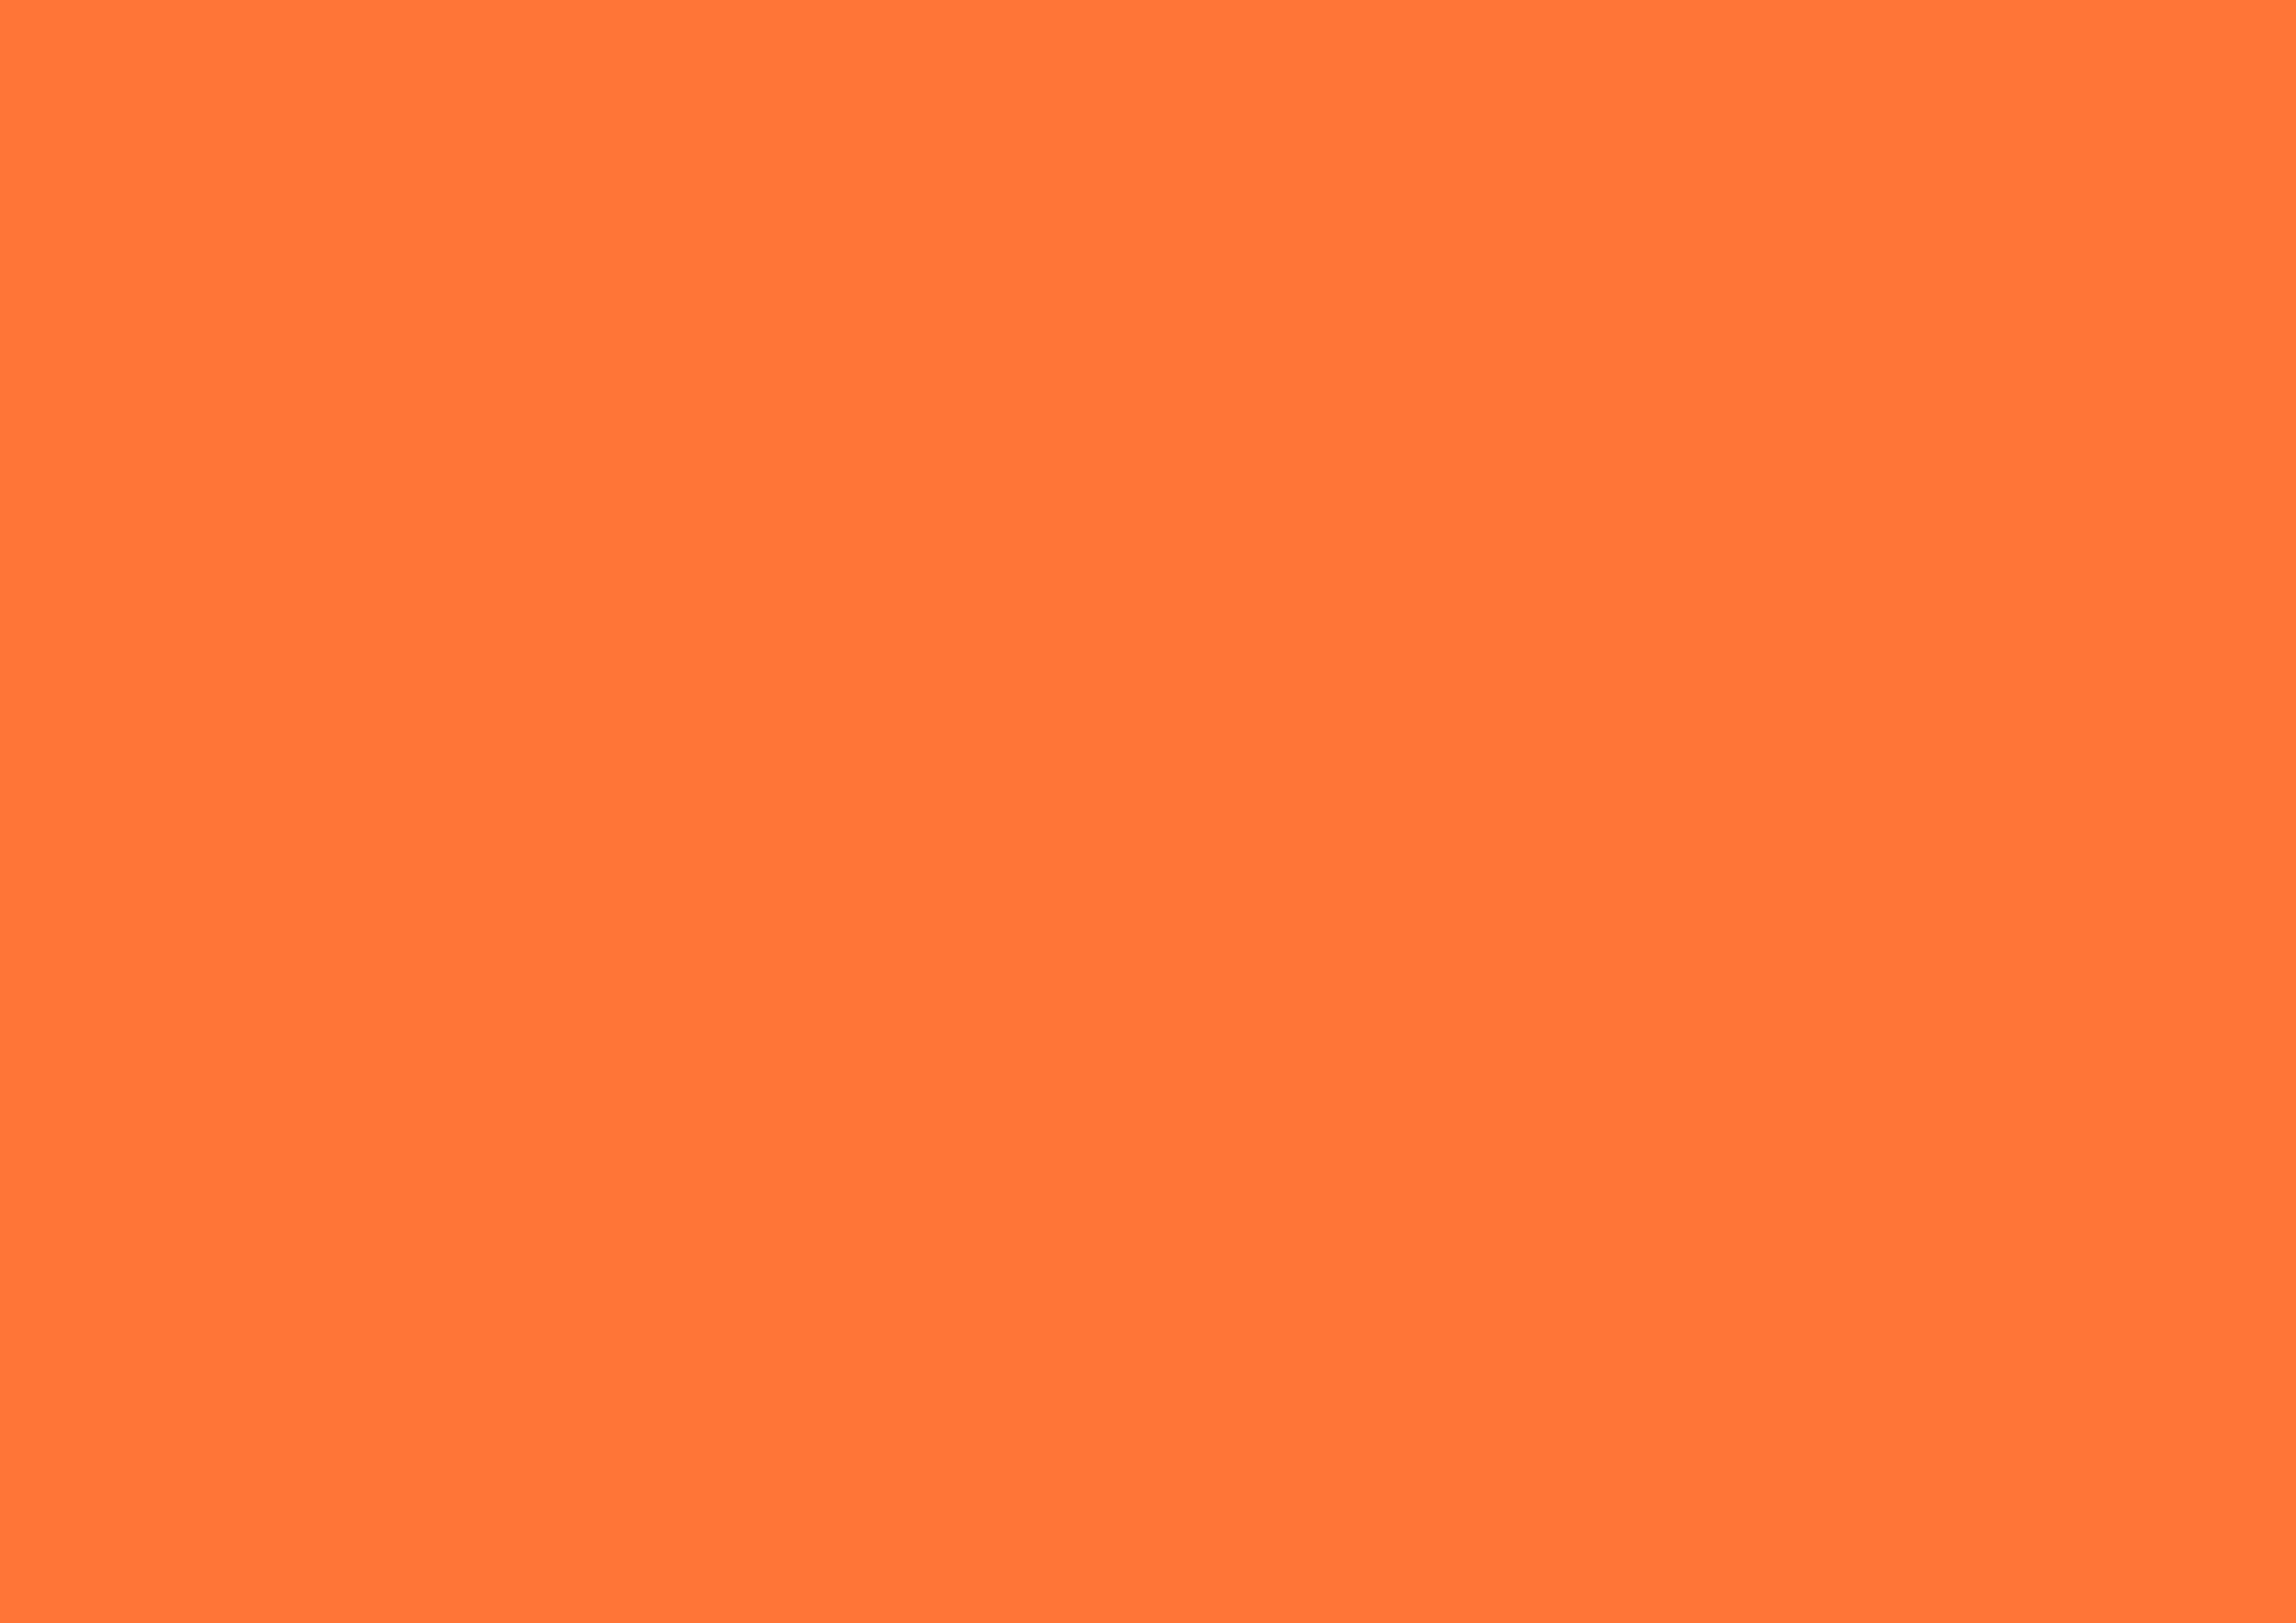 3508x2480 Orange Crayola Solid Color Background